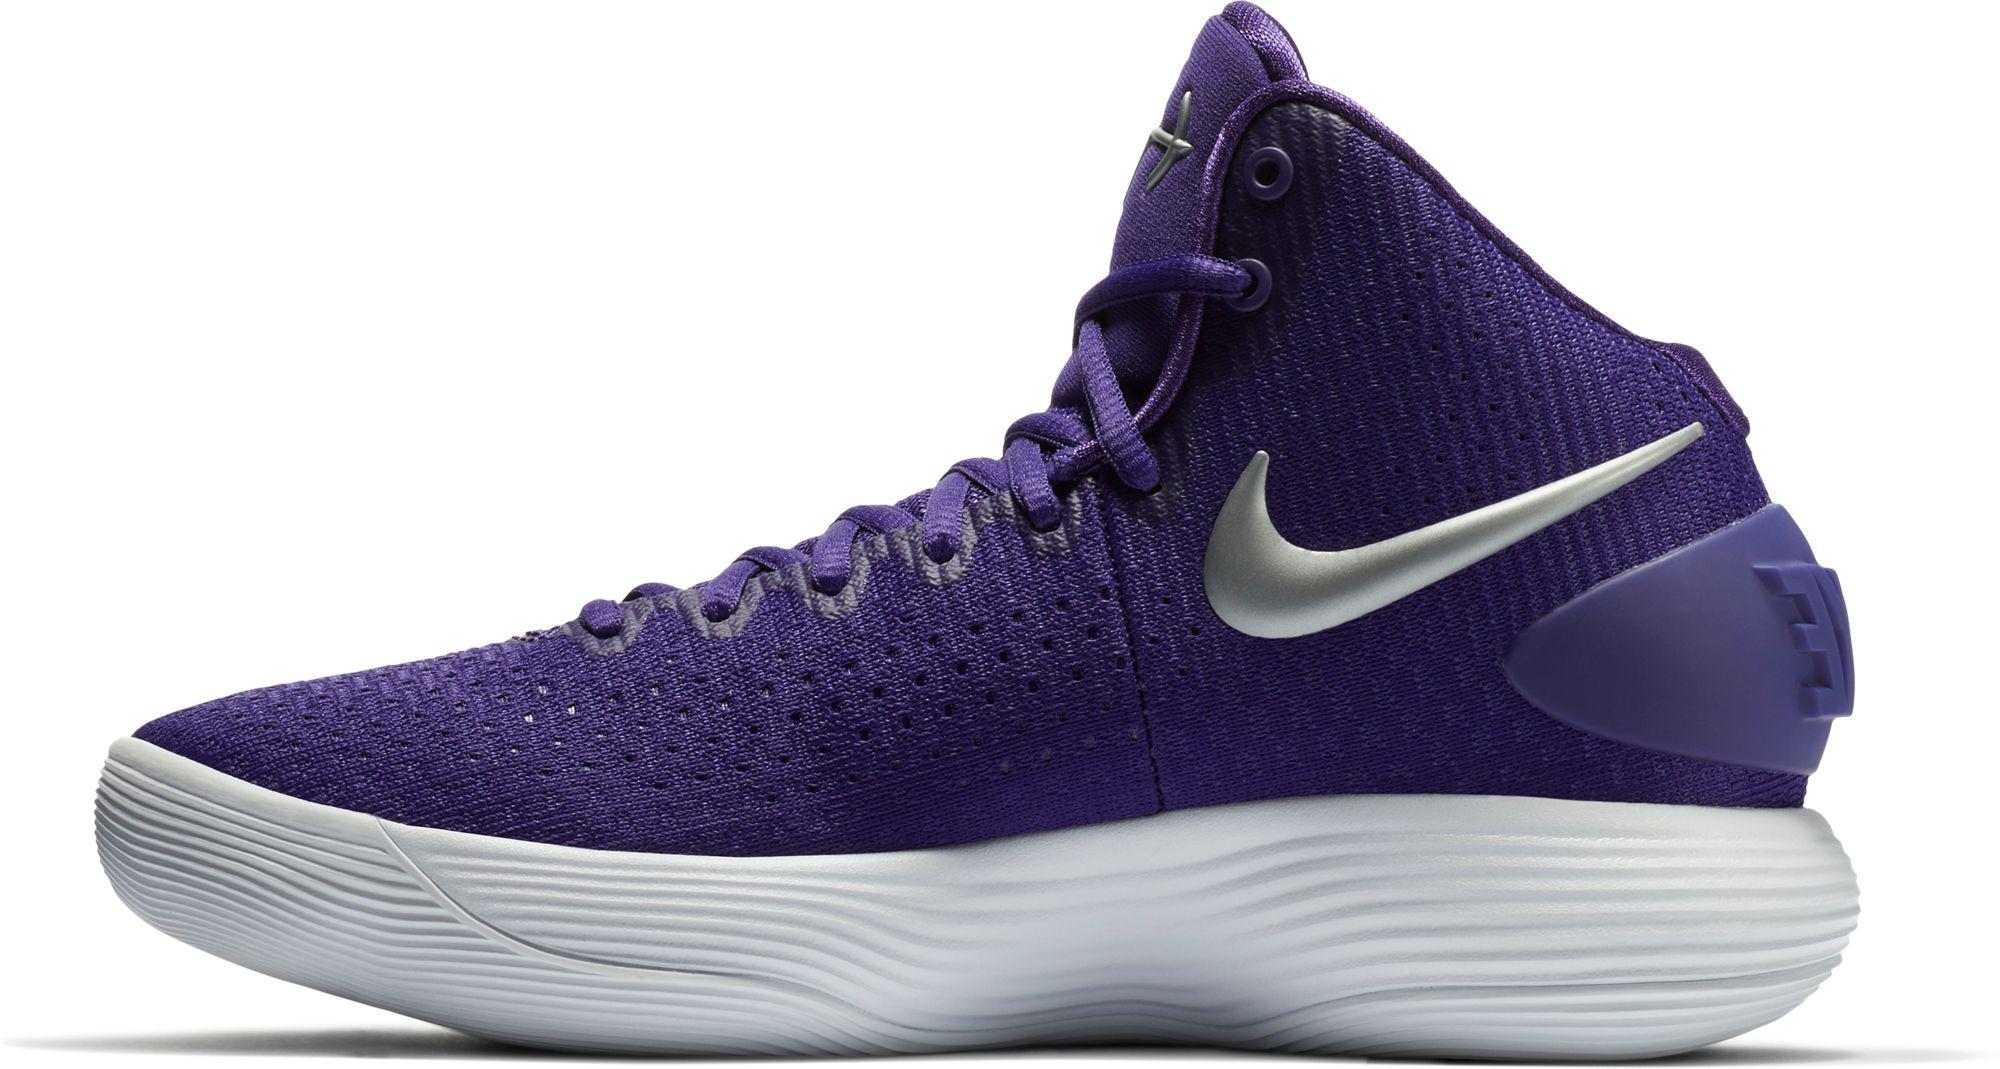 Lyst - Nike Hyperdunk 2017 Basketball Shoes in Purple